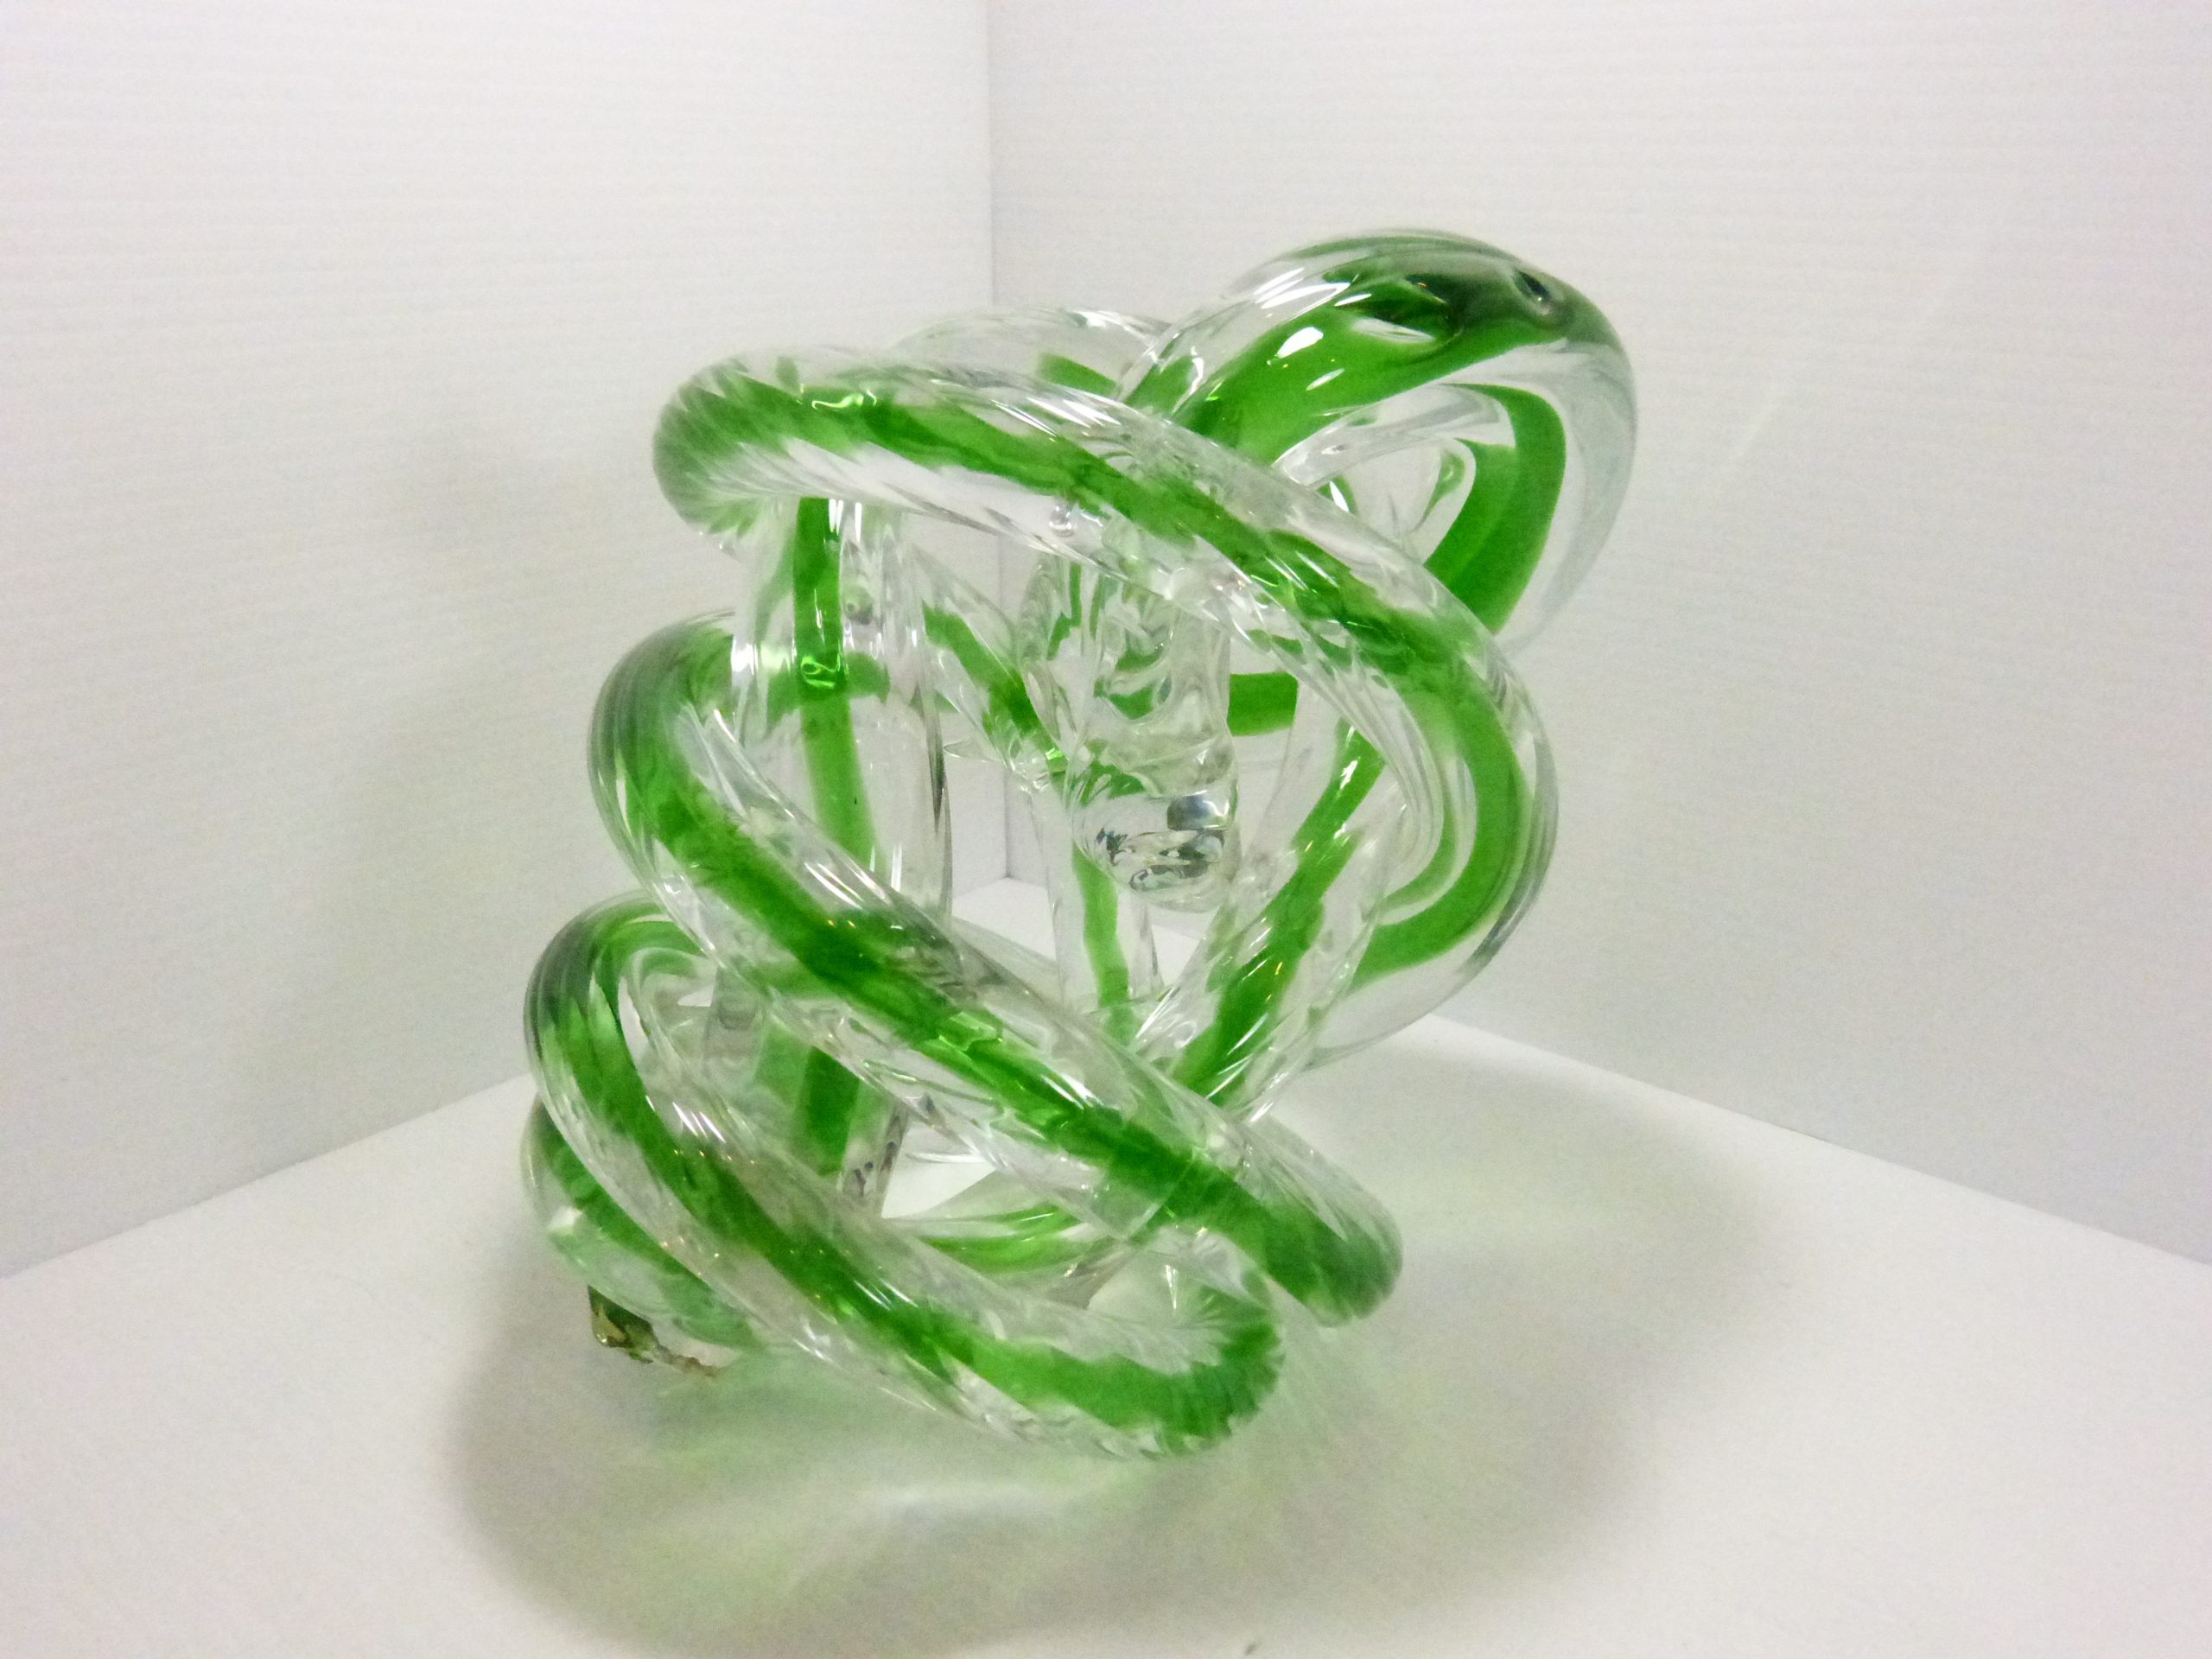 Fusion Z Art Glass Knot Sculpture 10" Tall